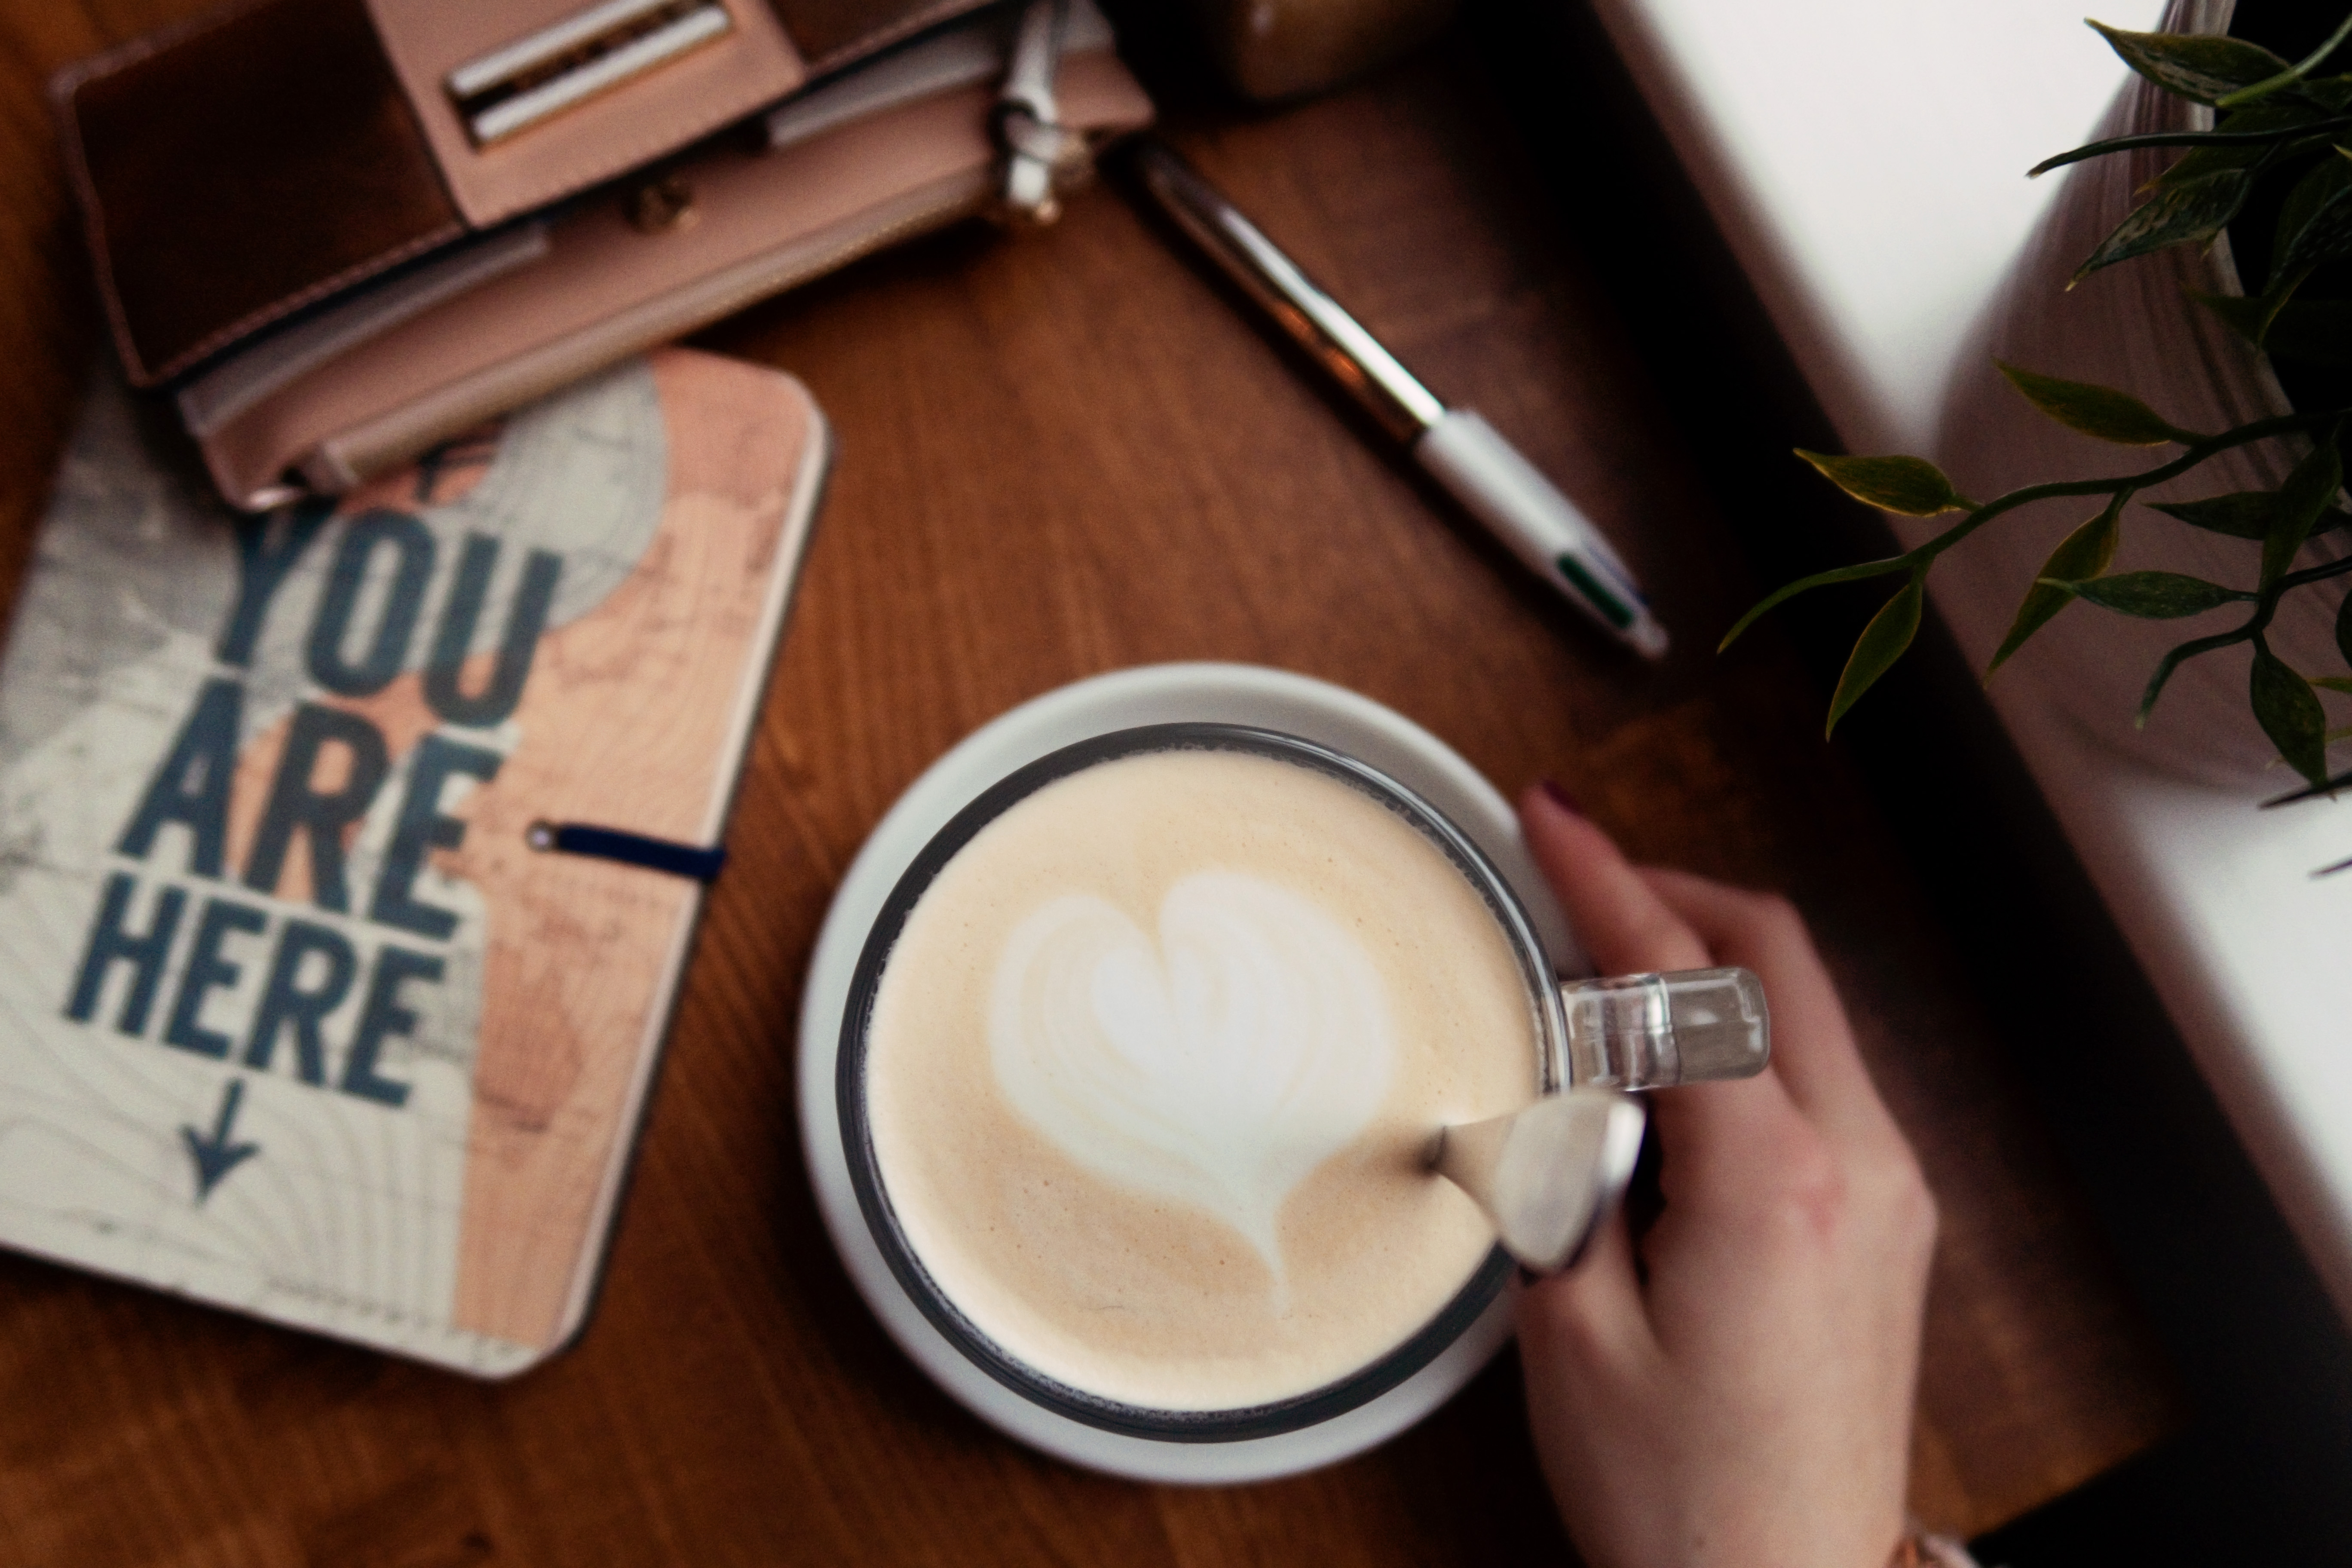 Heart shaped latte art on coffee.